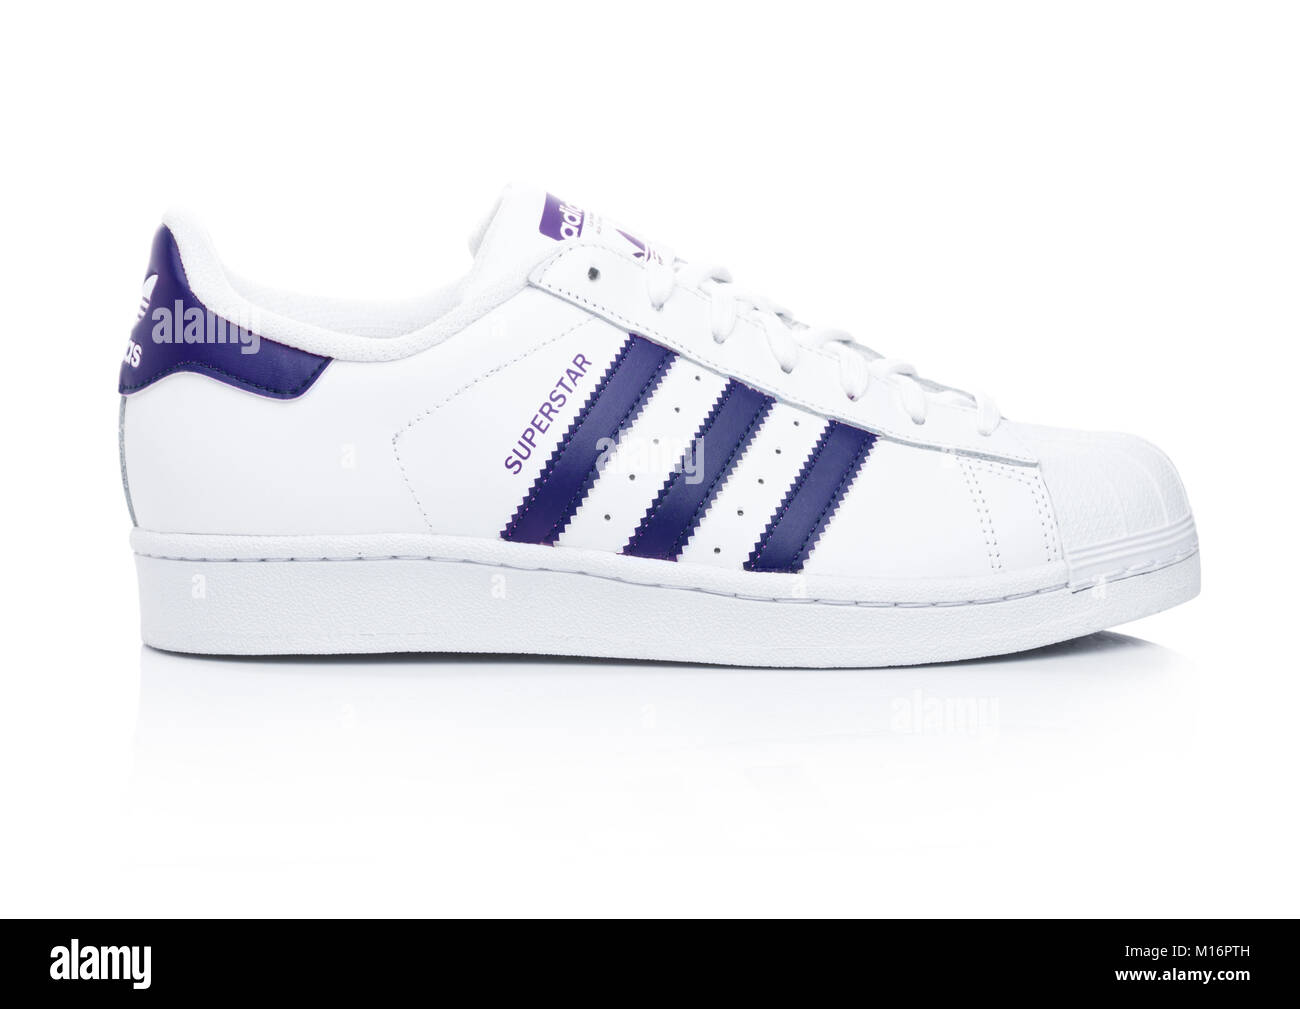 Londres, Royaume-Uni - 24 janvier 2018 : Adidas Originals Superstar  chaussures bleu sur fond blanc.La multinationale allemande qui conçoit et  fabrique Photo Stock - Alamy